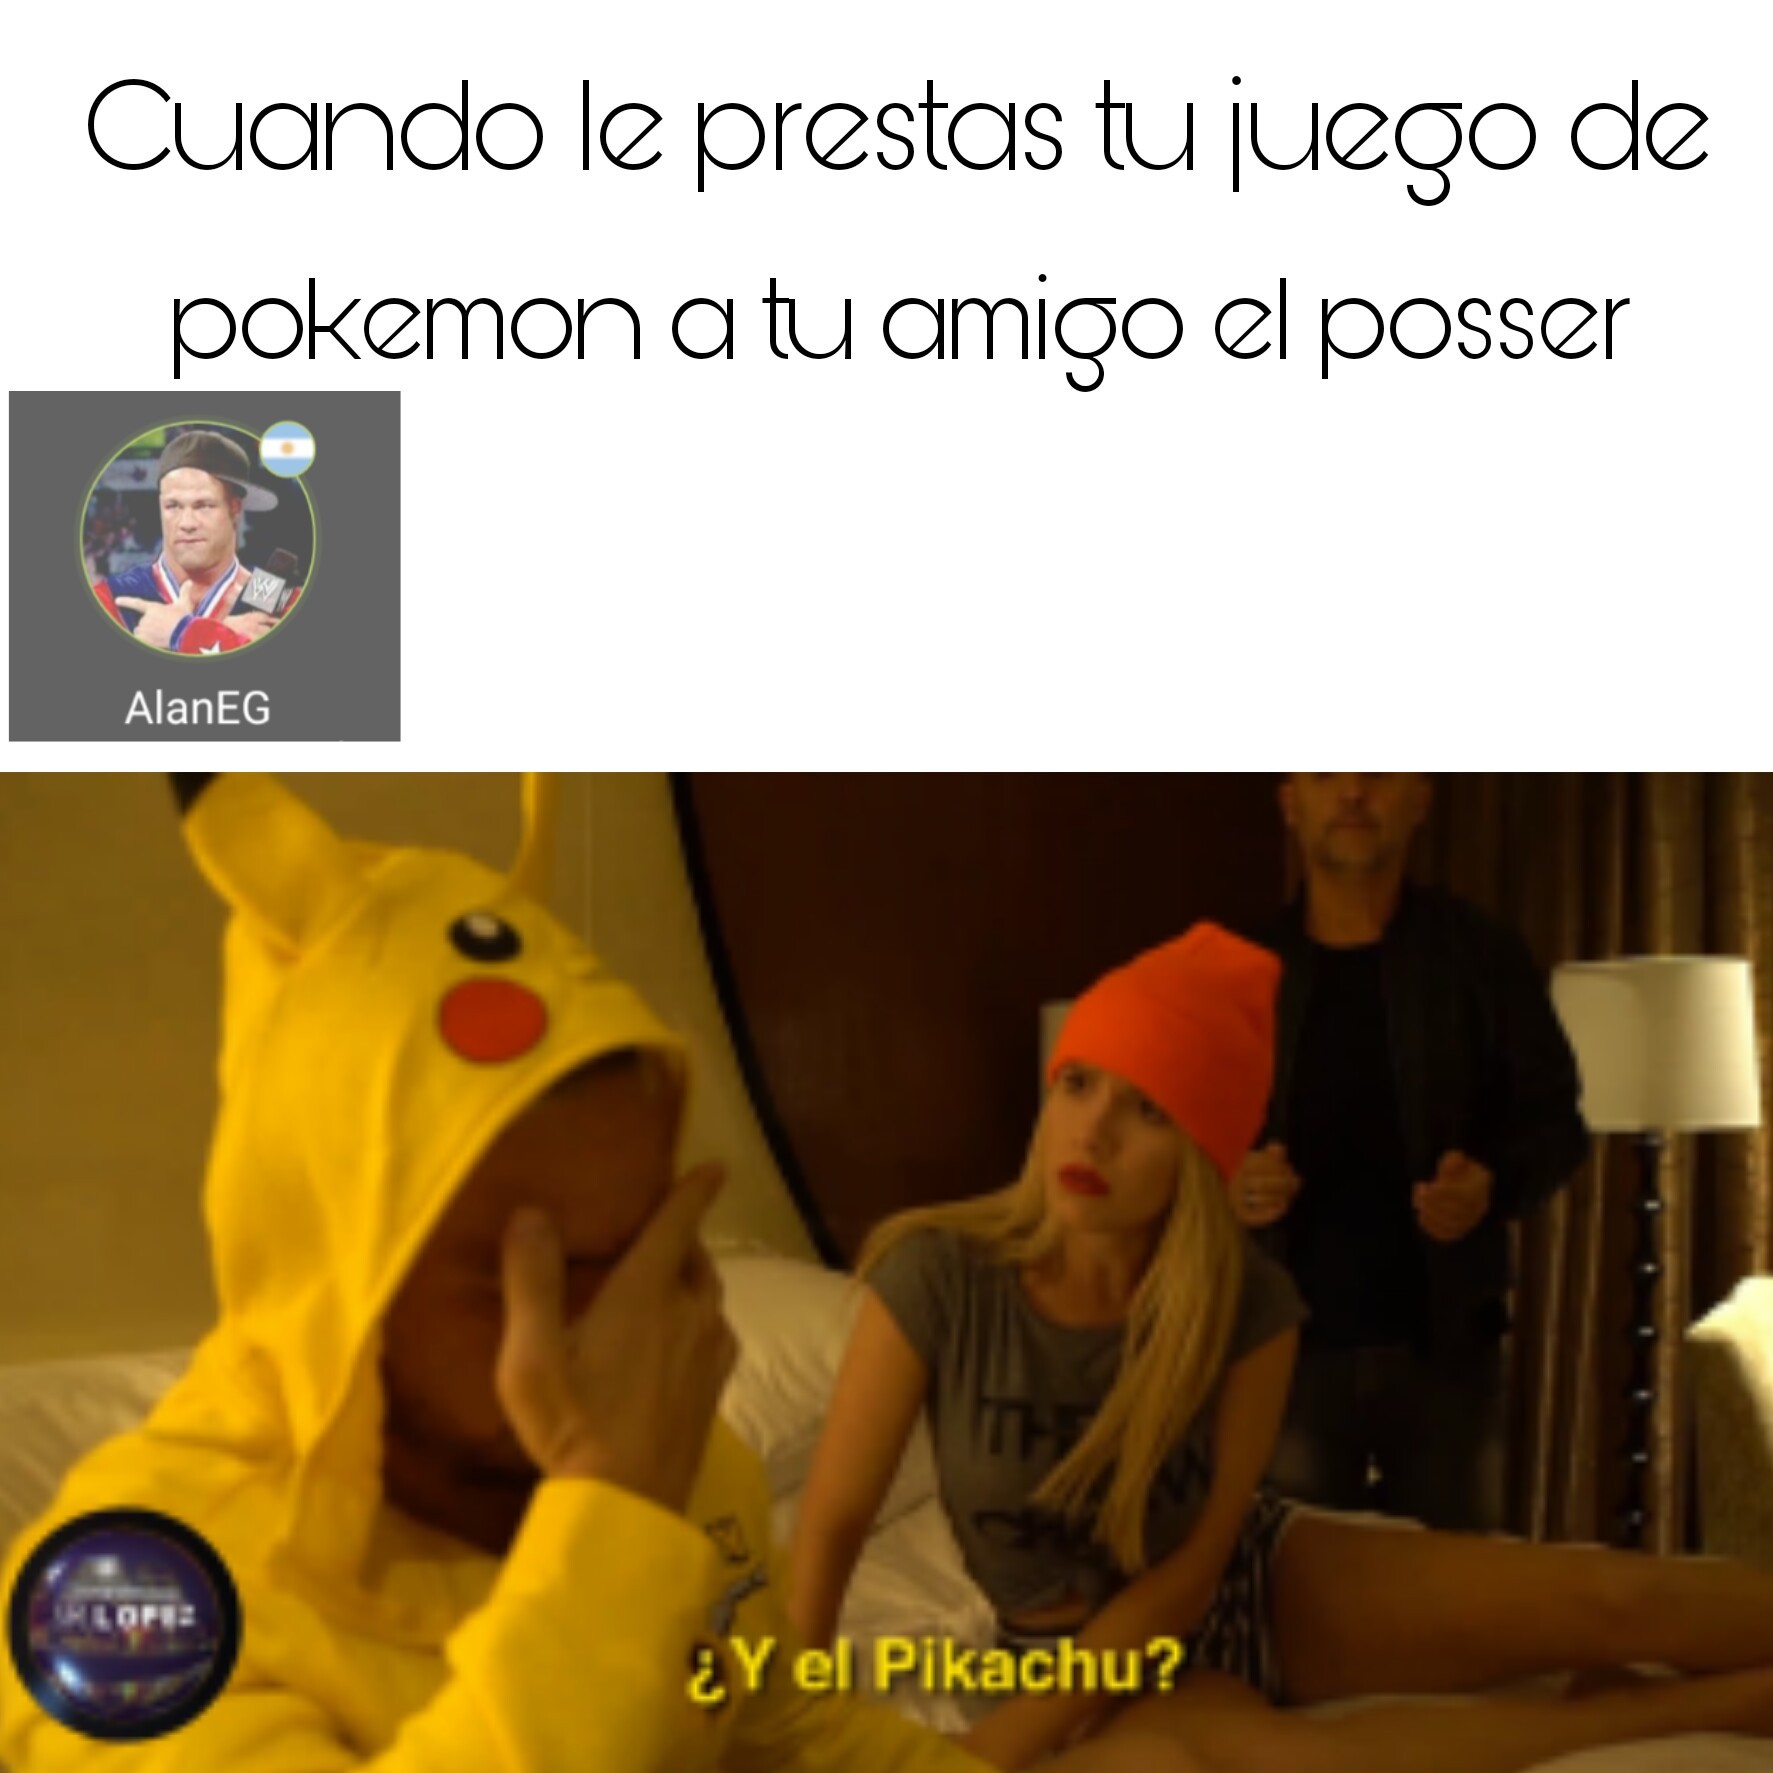 No me gusta pikachu - meme